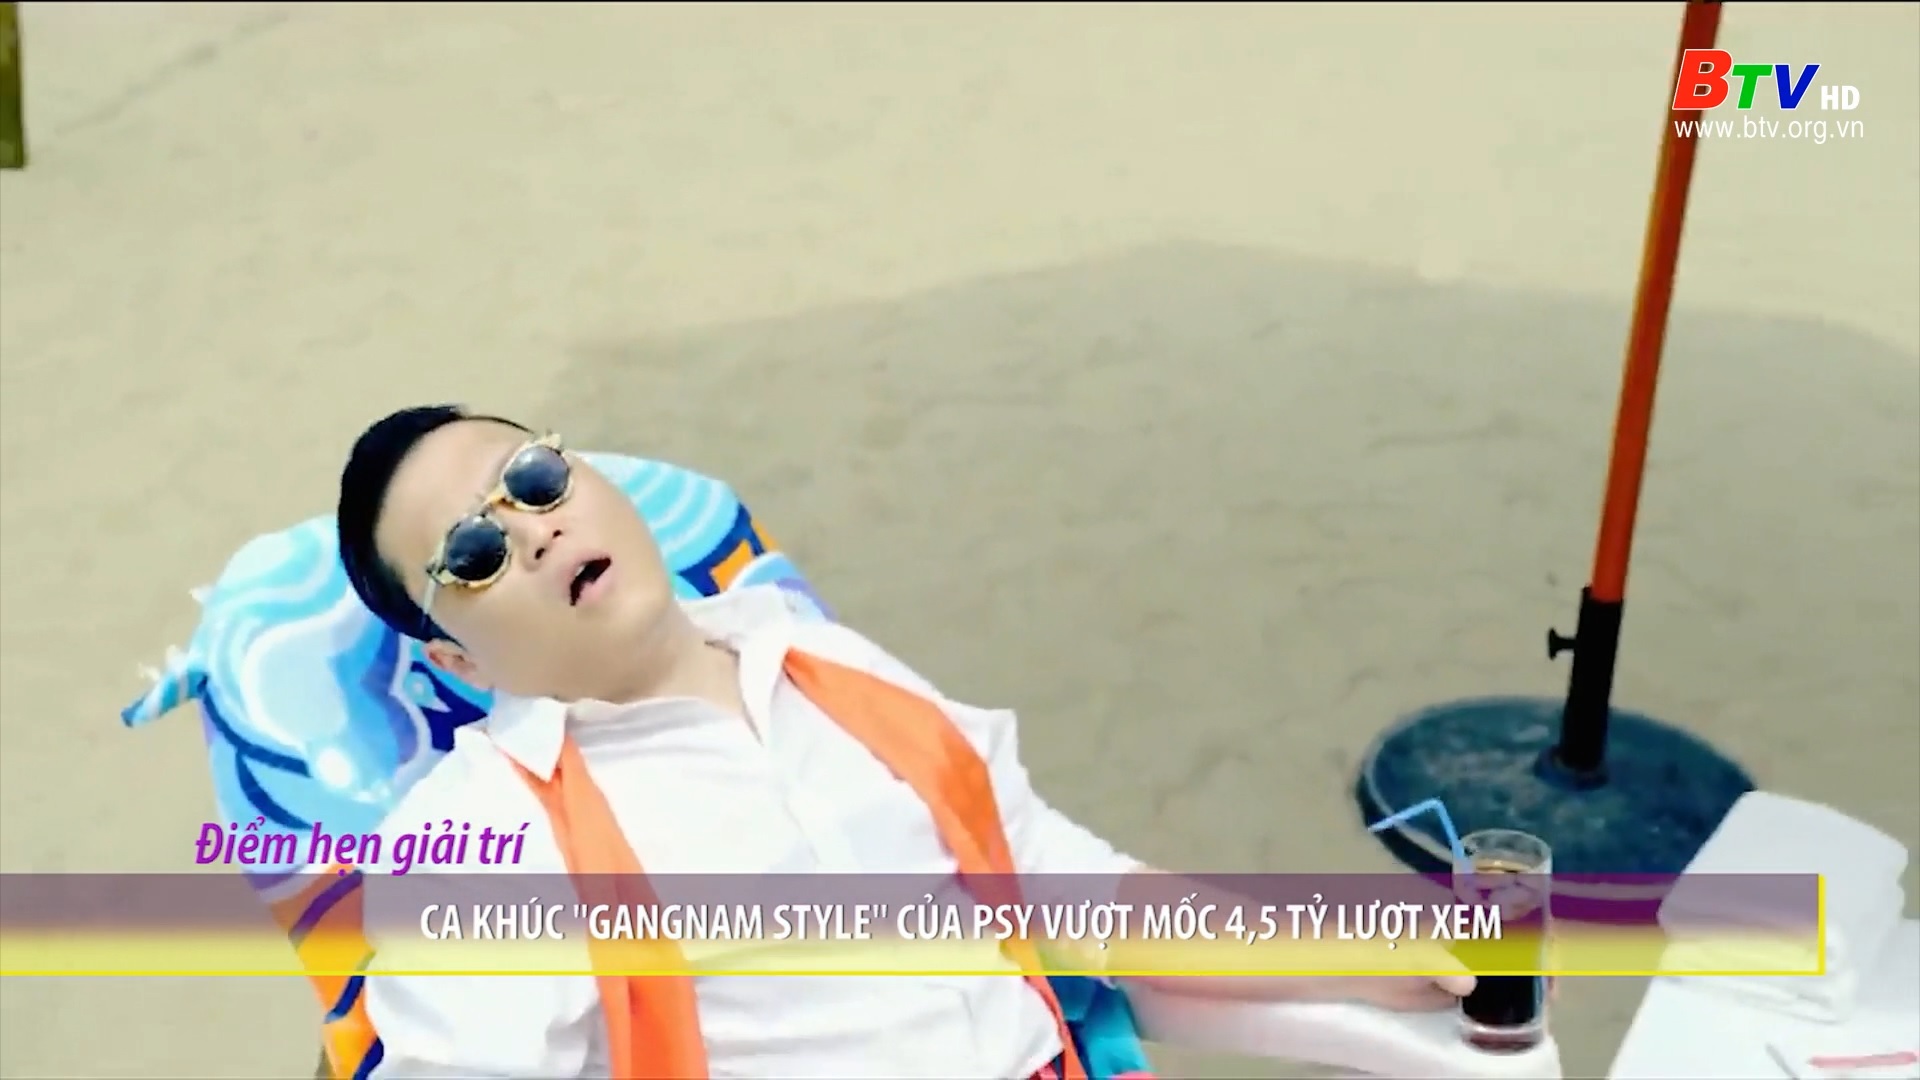 Ca khúc “Gangnam Style” của Psy vượt mốc 4,5 tỷ lượt xem